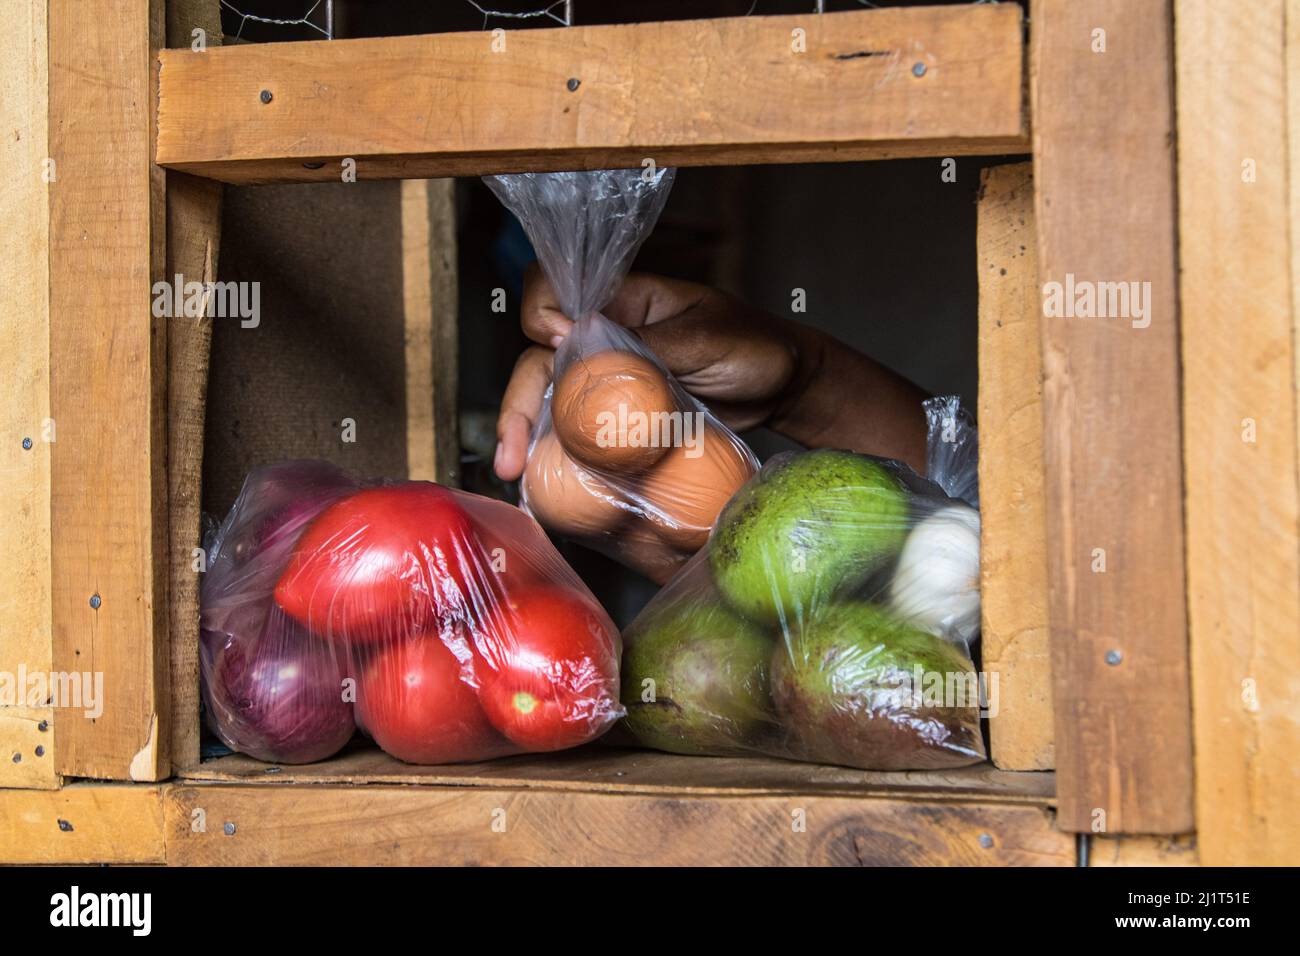 Eine Ladenbesitzerin versorgt ihre Kundin mit Eiern, Obst und Gemüse, die in verbotenen Plastiktüten verpackt sind. Am 28 2017. August Verbot Kenia die Verwendung, Herstellung und Einfuhr aller Einweg-Plastiktüten, die für gewerbliche Verpackungen und Haushaltsverpackungen verwendet werden. Das weltweit als strengstes Verbot gepriesen wurde leider dadurch frustriert, dass Händler die Taschen durch Kenias poröse Grenzen mit seinen ostafrikanischen Nachbarn schmuggeln. Umweltgruppen haben sich für ein regionales Verbot von Einweg-Kunststoff eingesetzt, um die zunehmende Verschmutzung durch Kunststoff einzudämmen. (Foto von James Wakibia/SOPA Images/Sipa USA) Stockfoto